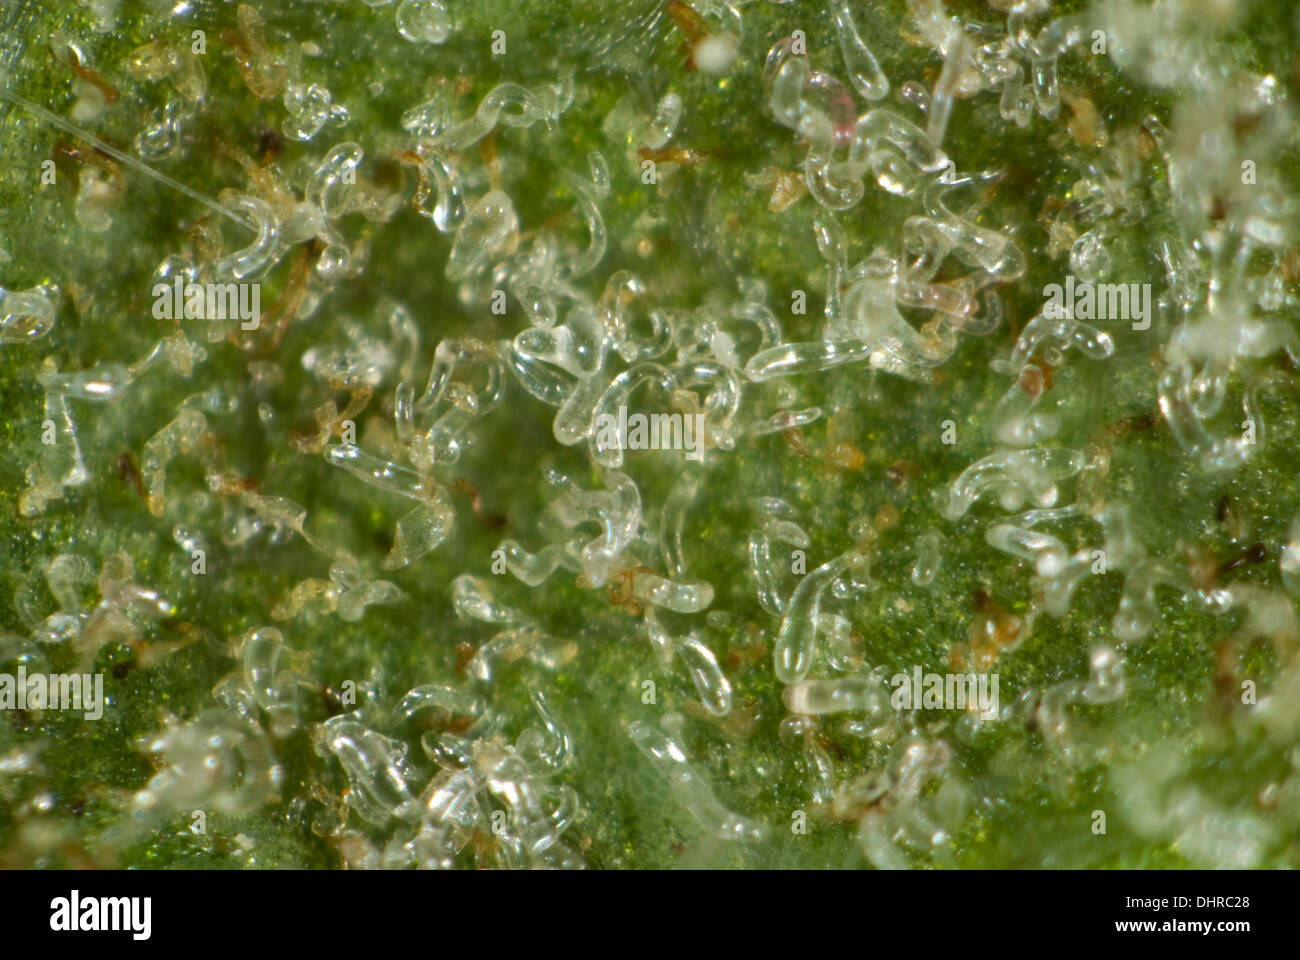 Colonia de ácaros, Aceria pseudoplatani gall, en la parte inferior de una hoja de sicomoro Foto de stock